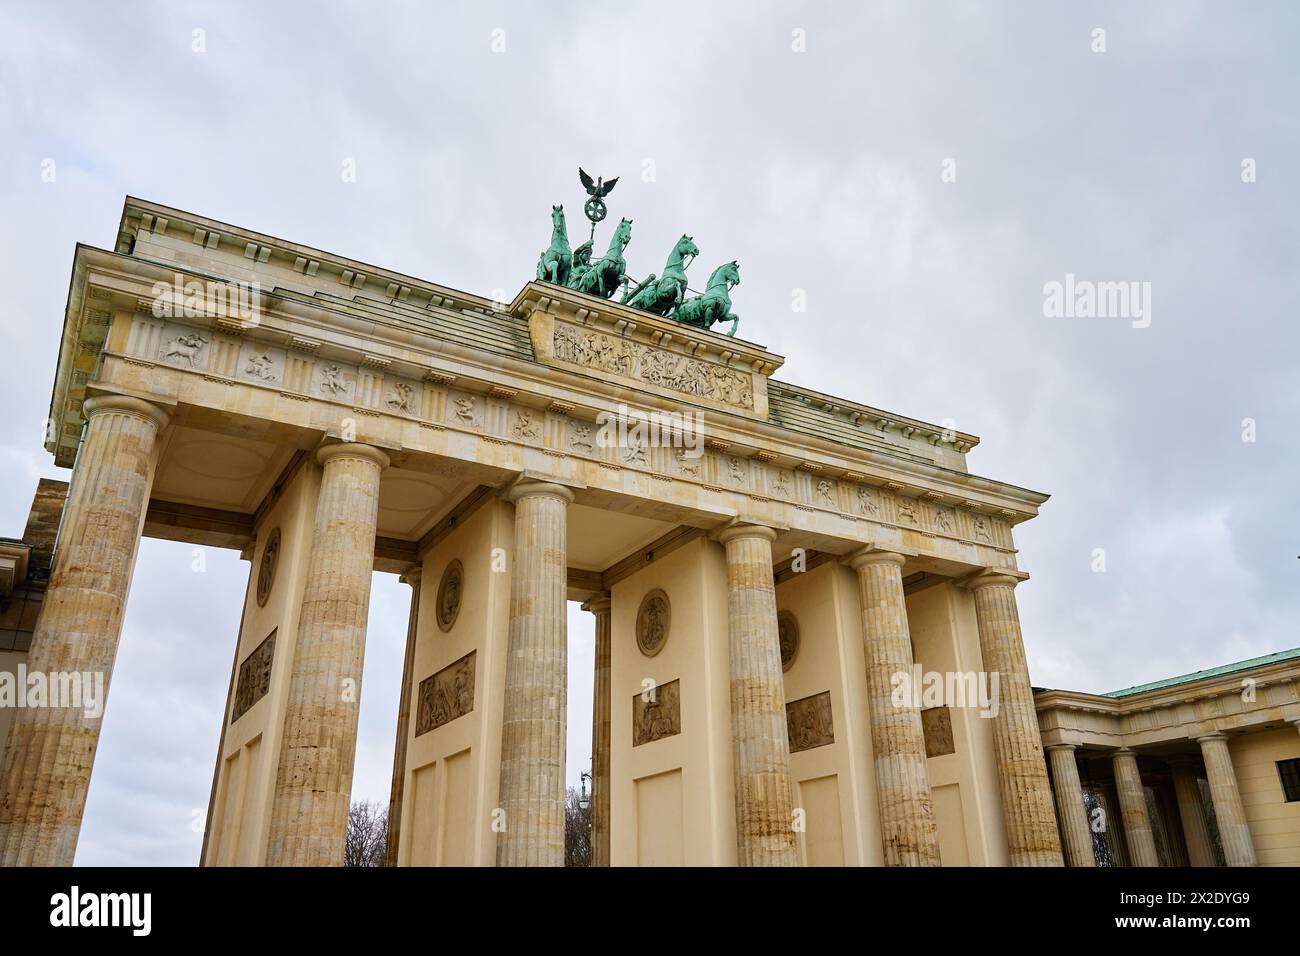 Porte de Brandebourg à Berlin. Monument architectural historique en Allemagne. Tourisme pour les touristes Banque D'Images